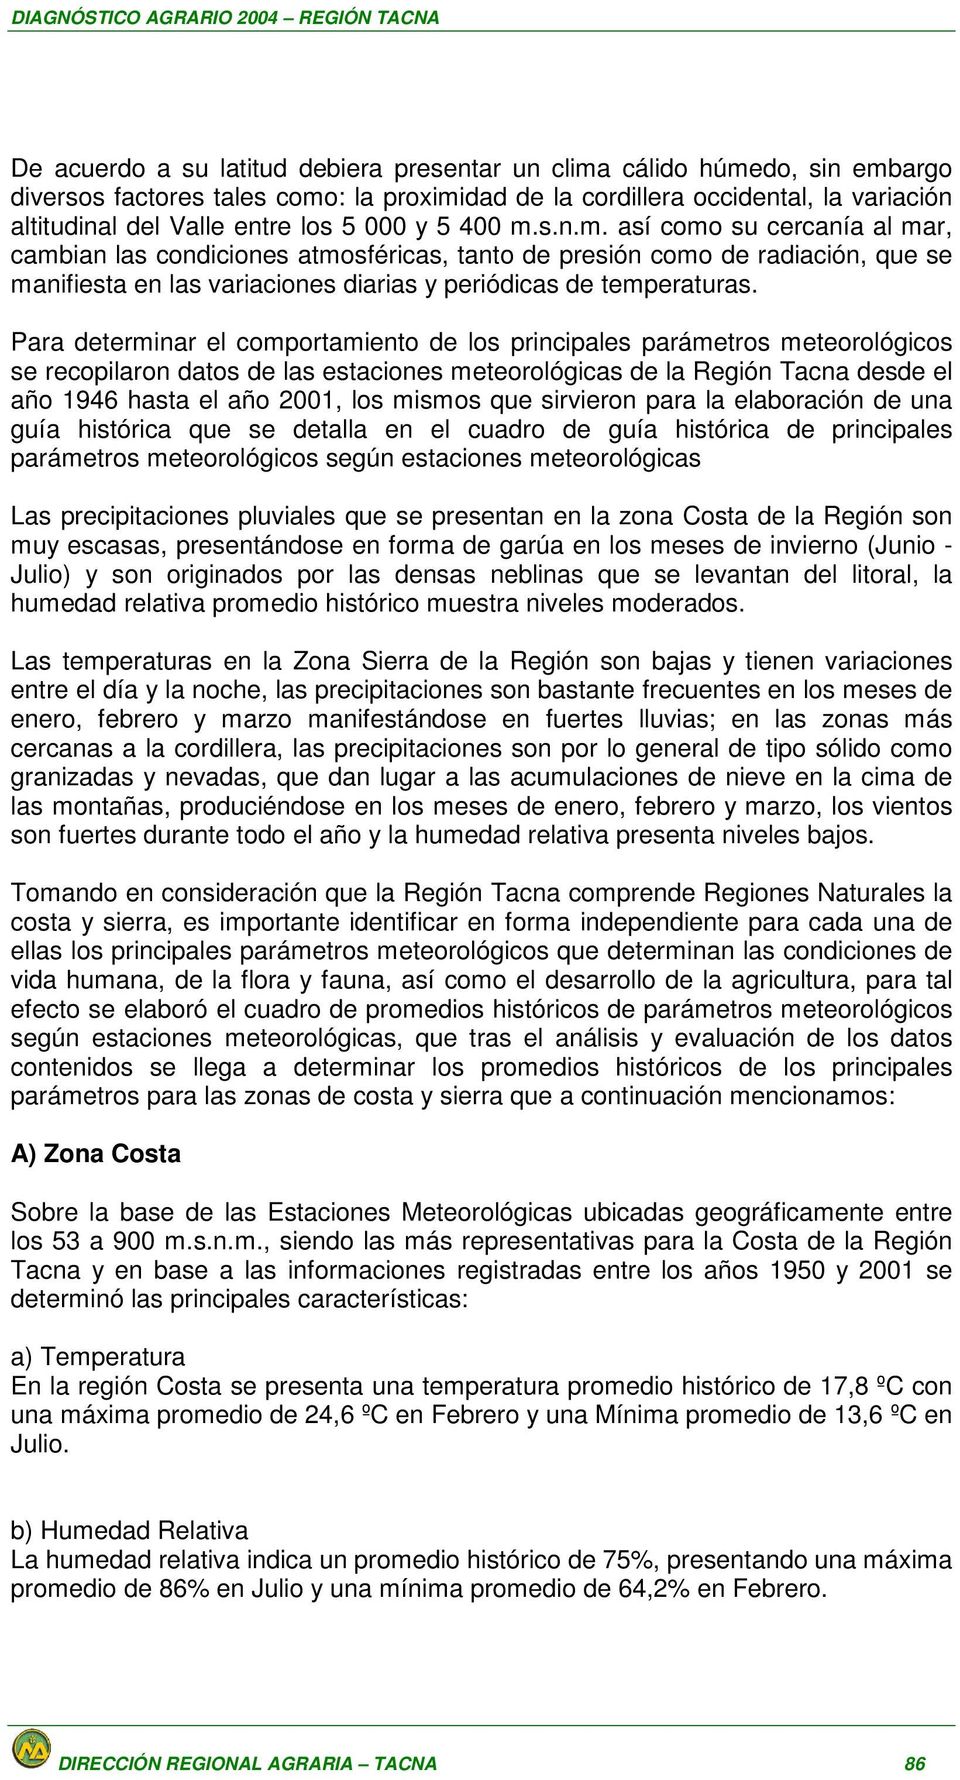 Para determinar el comportamiento de los principales parámetros meteorológicos se recopilaron datos de las estaciones meteorológicas de la Región Tacna desde el año 1946 hasta el año 2001, los mismos